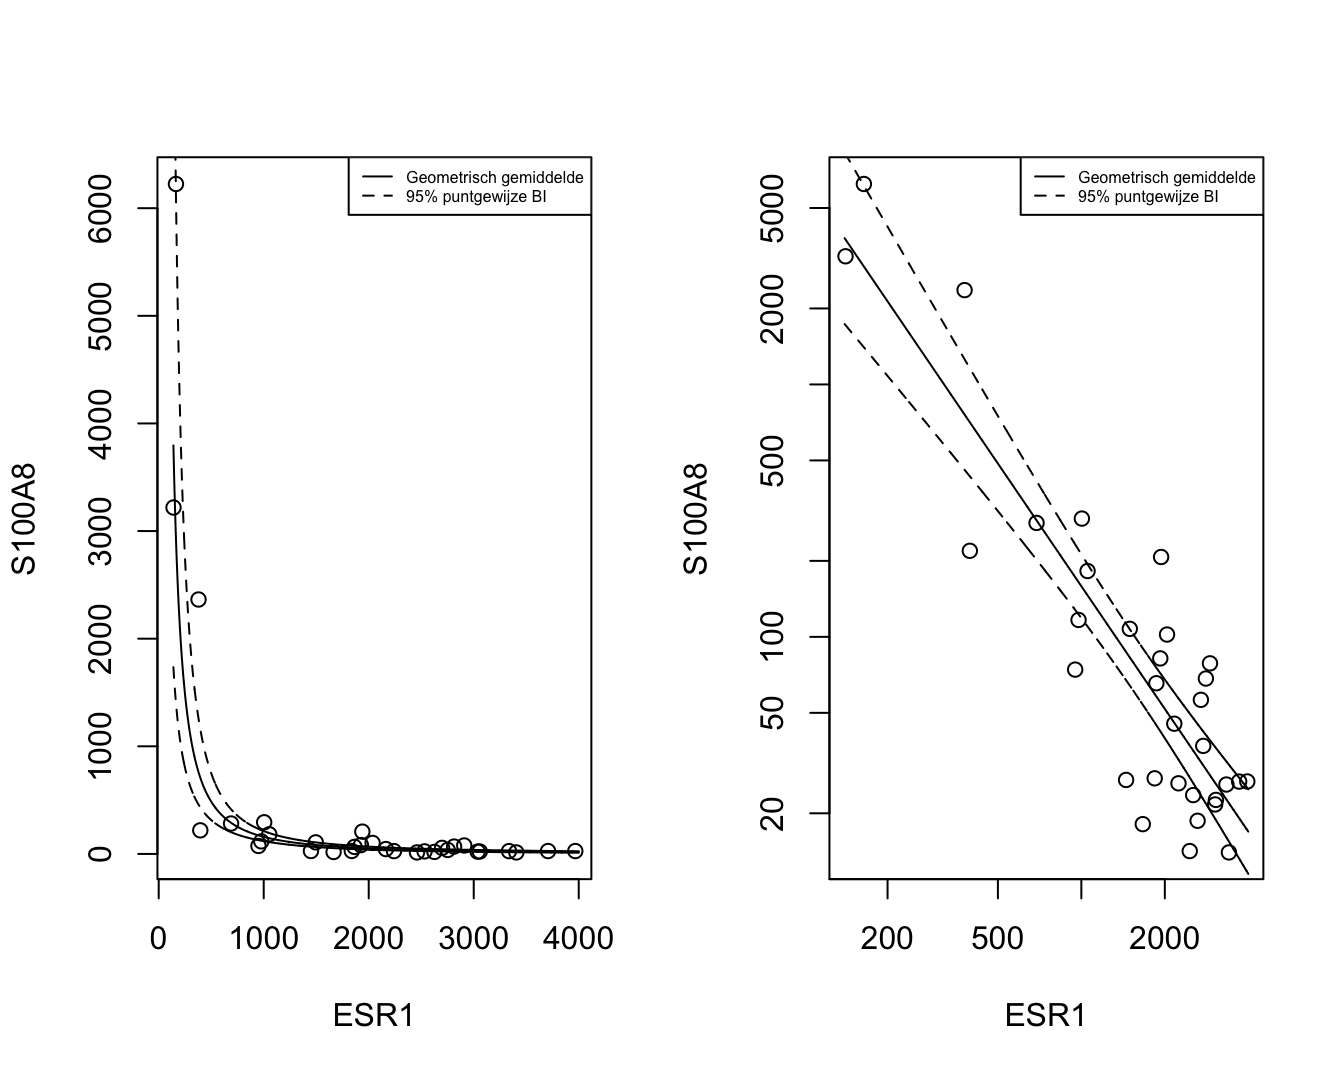 Scatterplot voor S100A8 expressie in functie van de ESR1 expressie met model schattingen (geometrische gemiddeldes) een 95$\%$ betrouwbaarheidsintervallen (links: originele schaal, rechts: originele schaal met logaritmische assen).